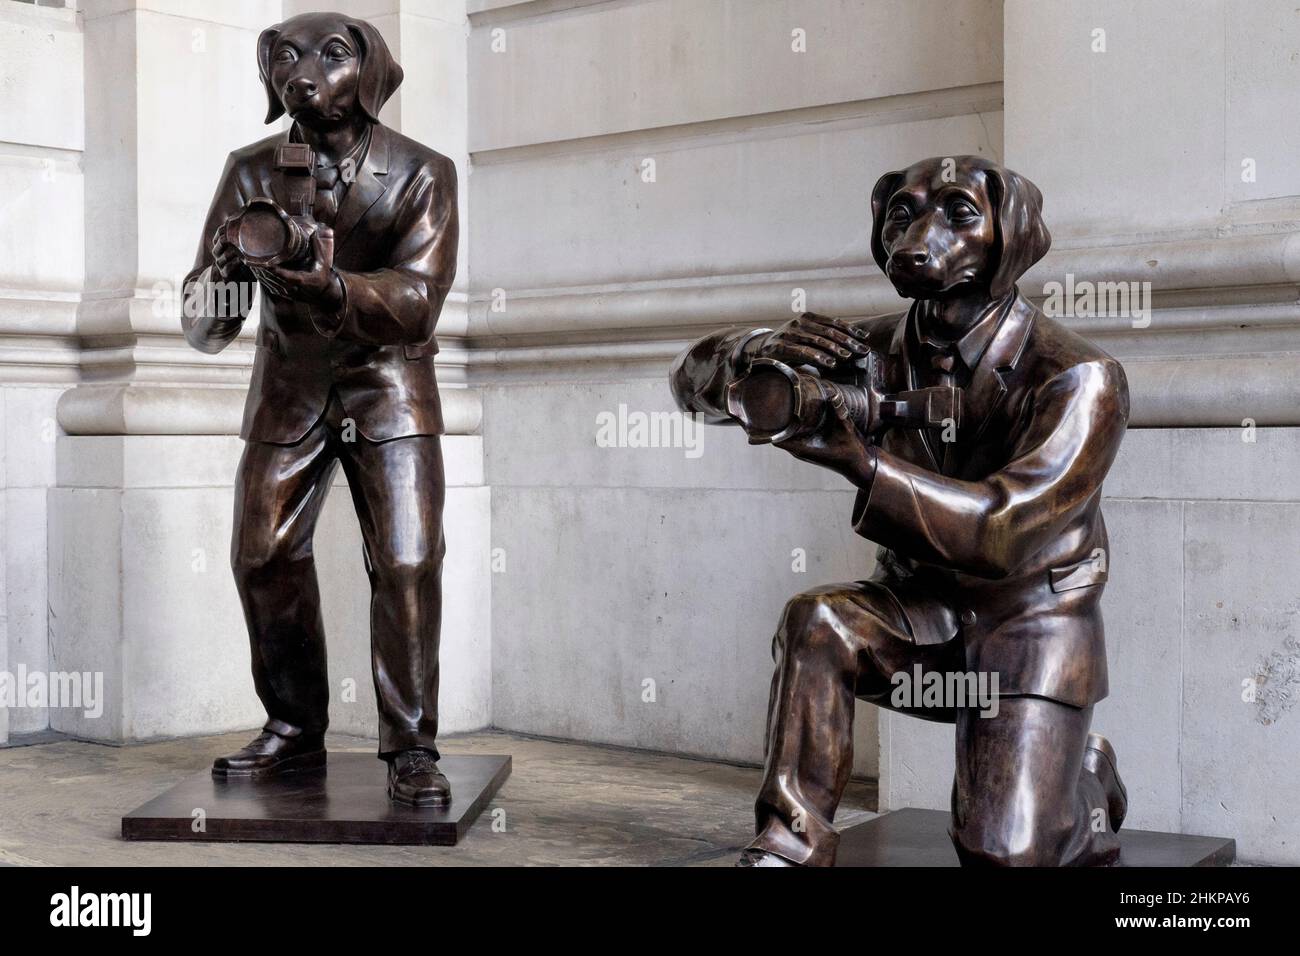 Chiens paparazzi ; sculptures en bronze du duo artistique de New York Gillie et Marc exposées au public à l'entrée de la Royal Exchange, Londres, Royaume-Uni. Banque D'Images